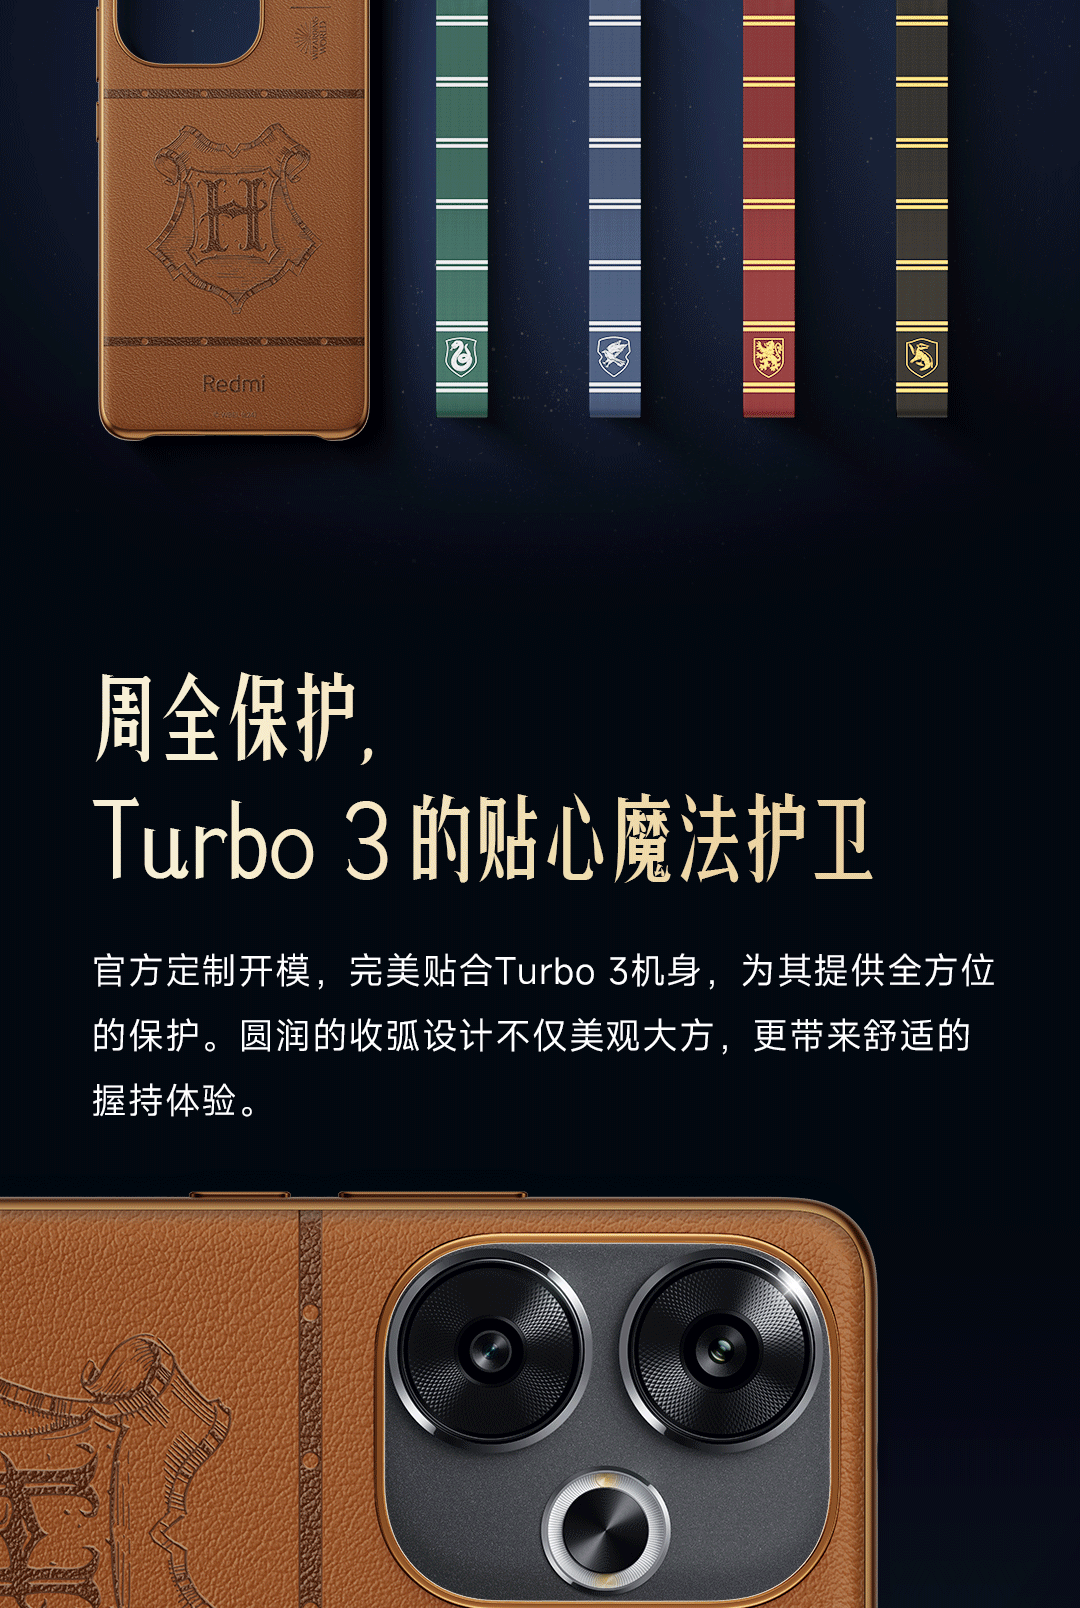 Redmi Turbo 3 Case